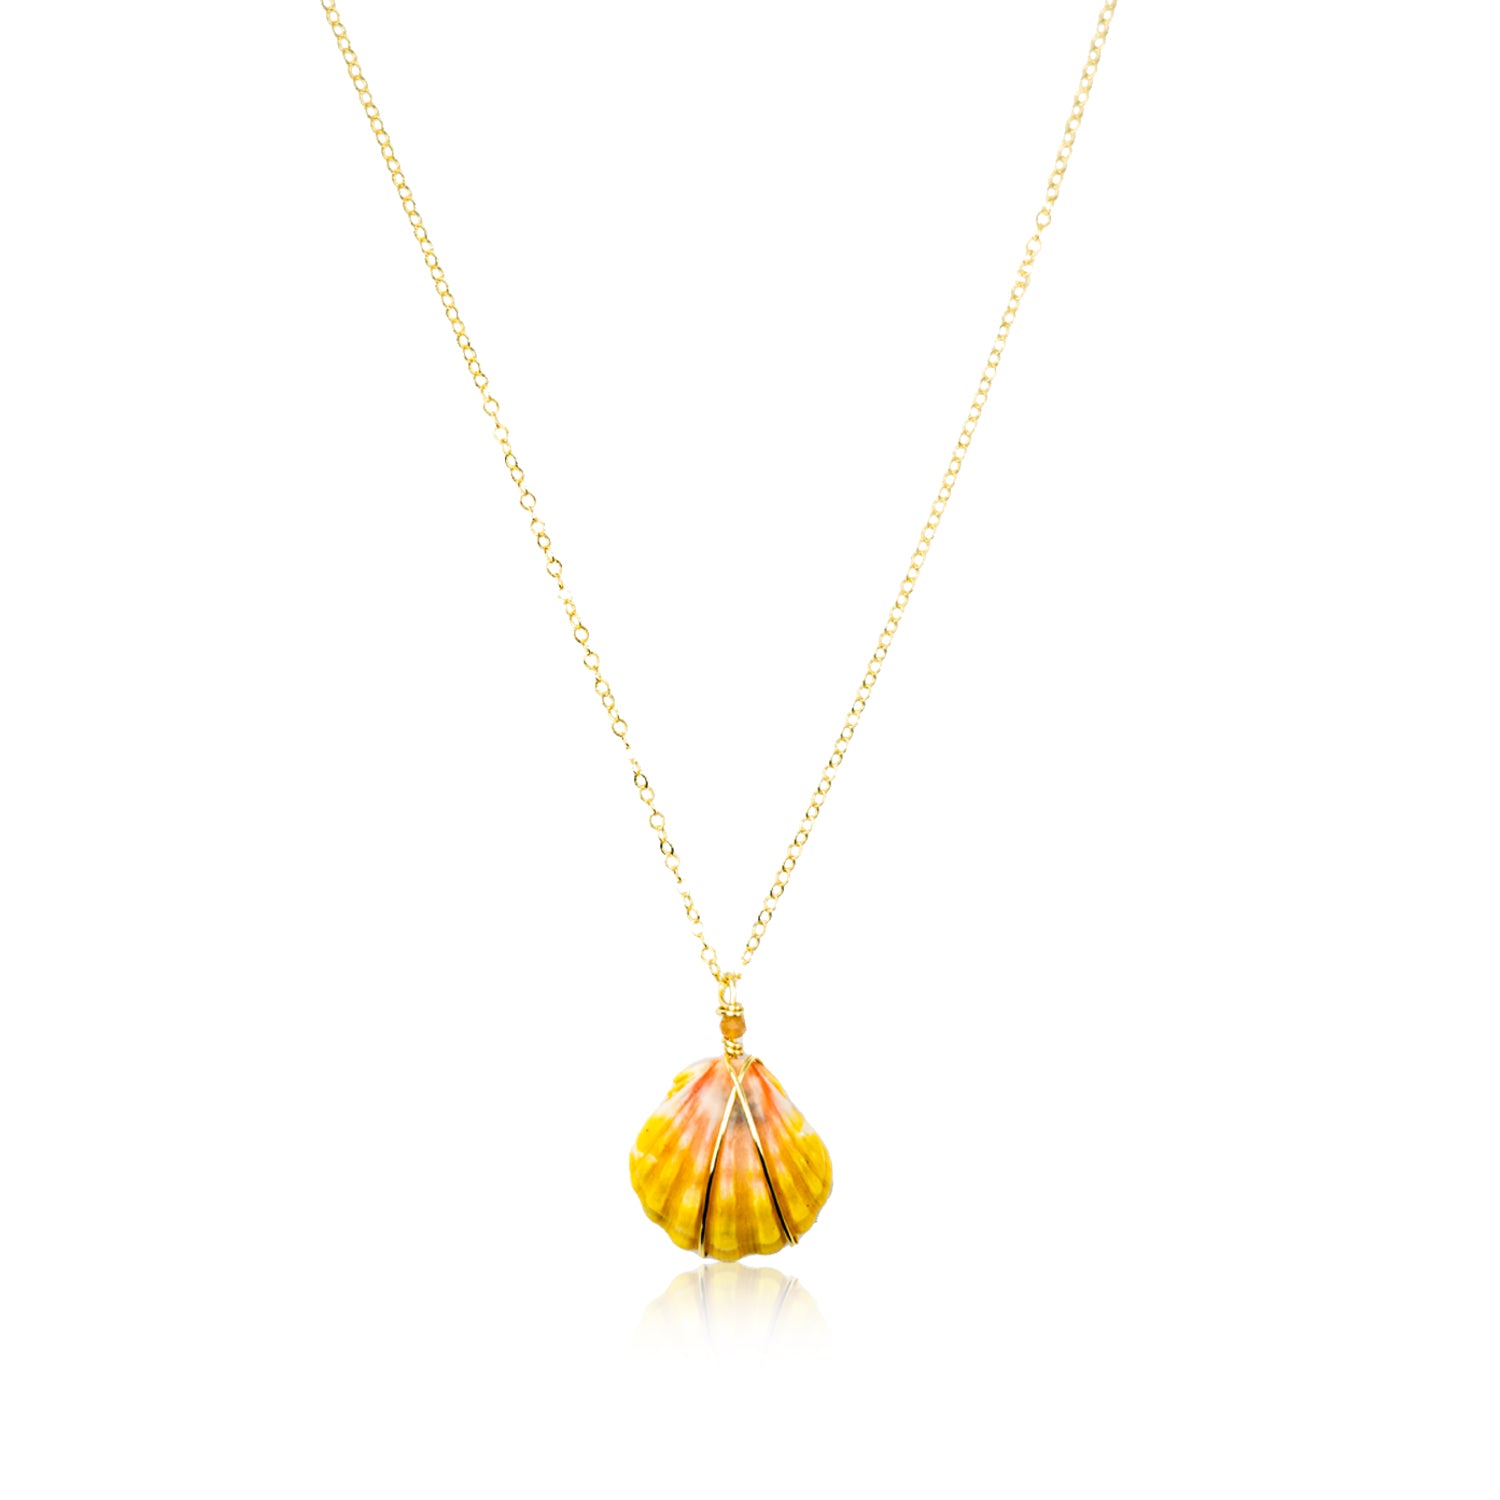 Rare Hawaiian Sunrise Shell 18" Gold Necklace